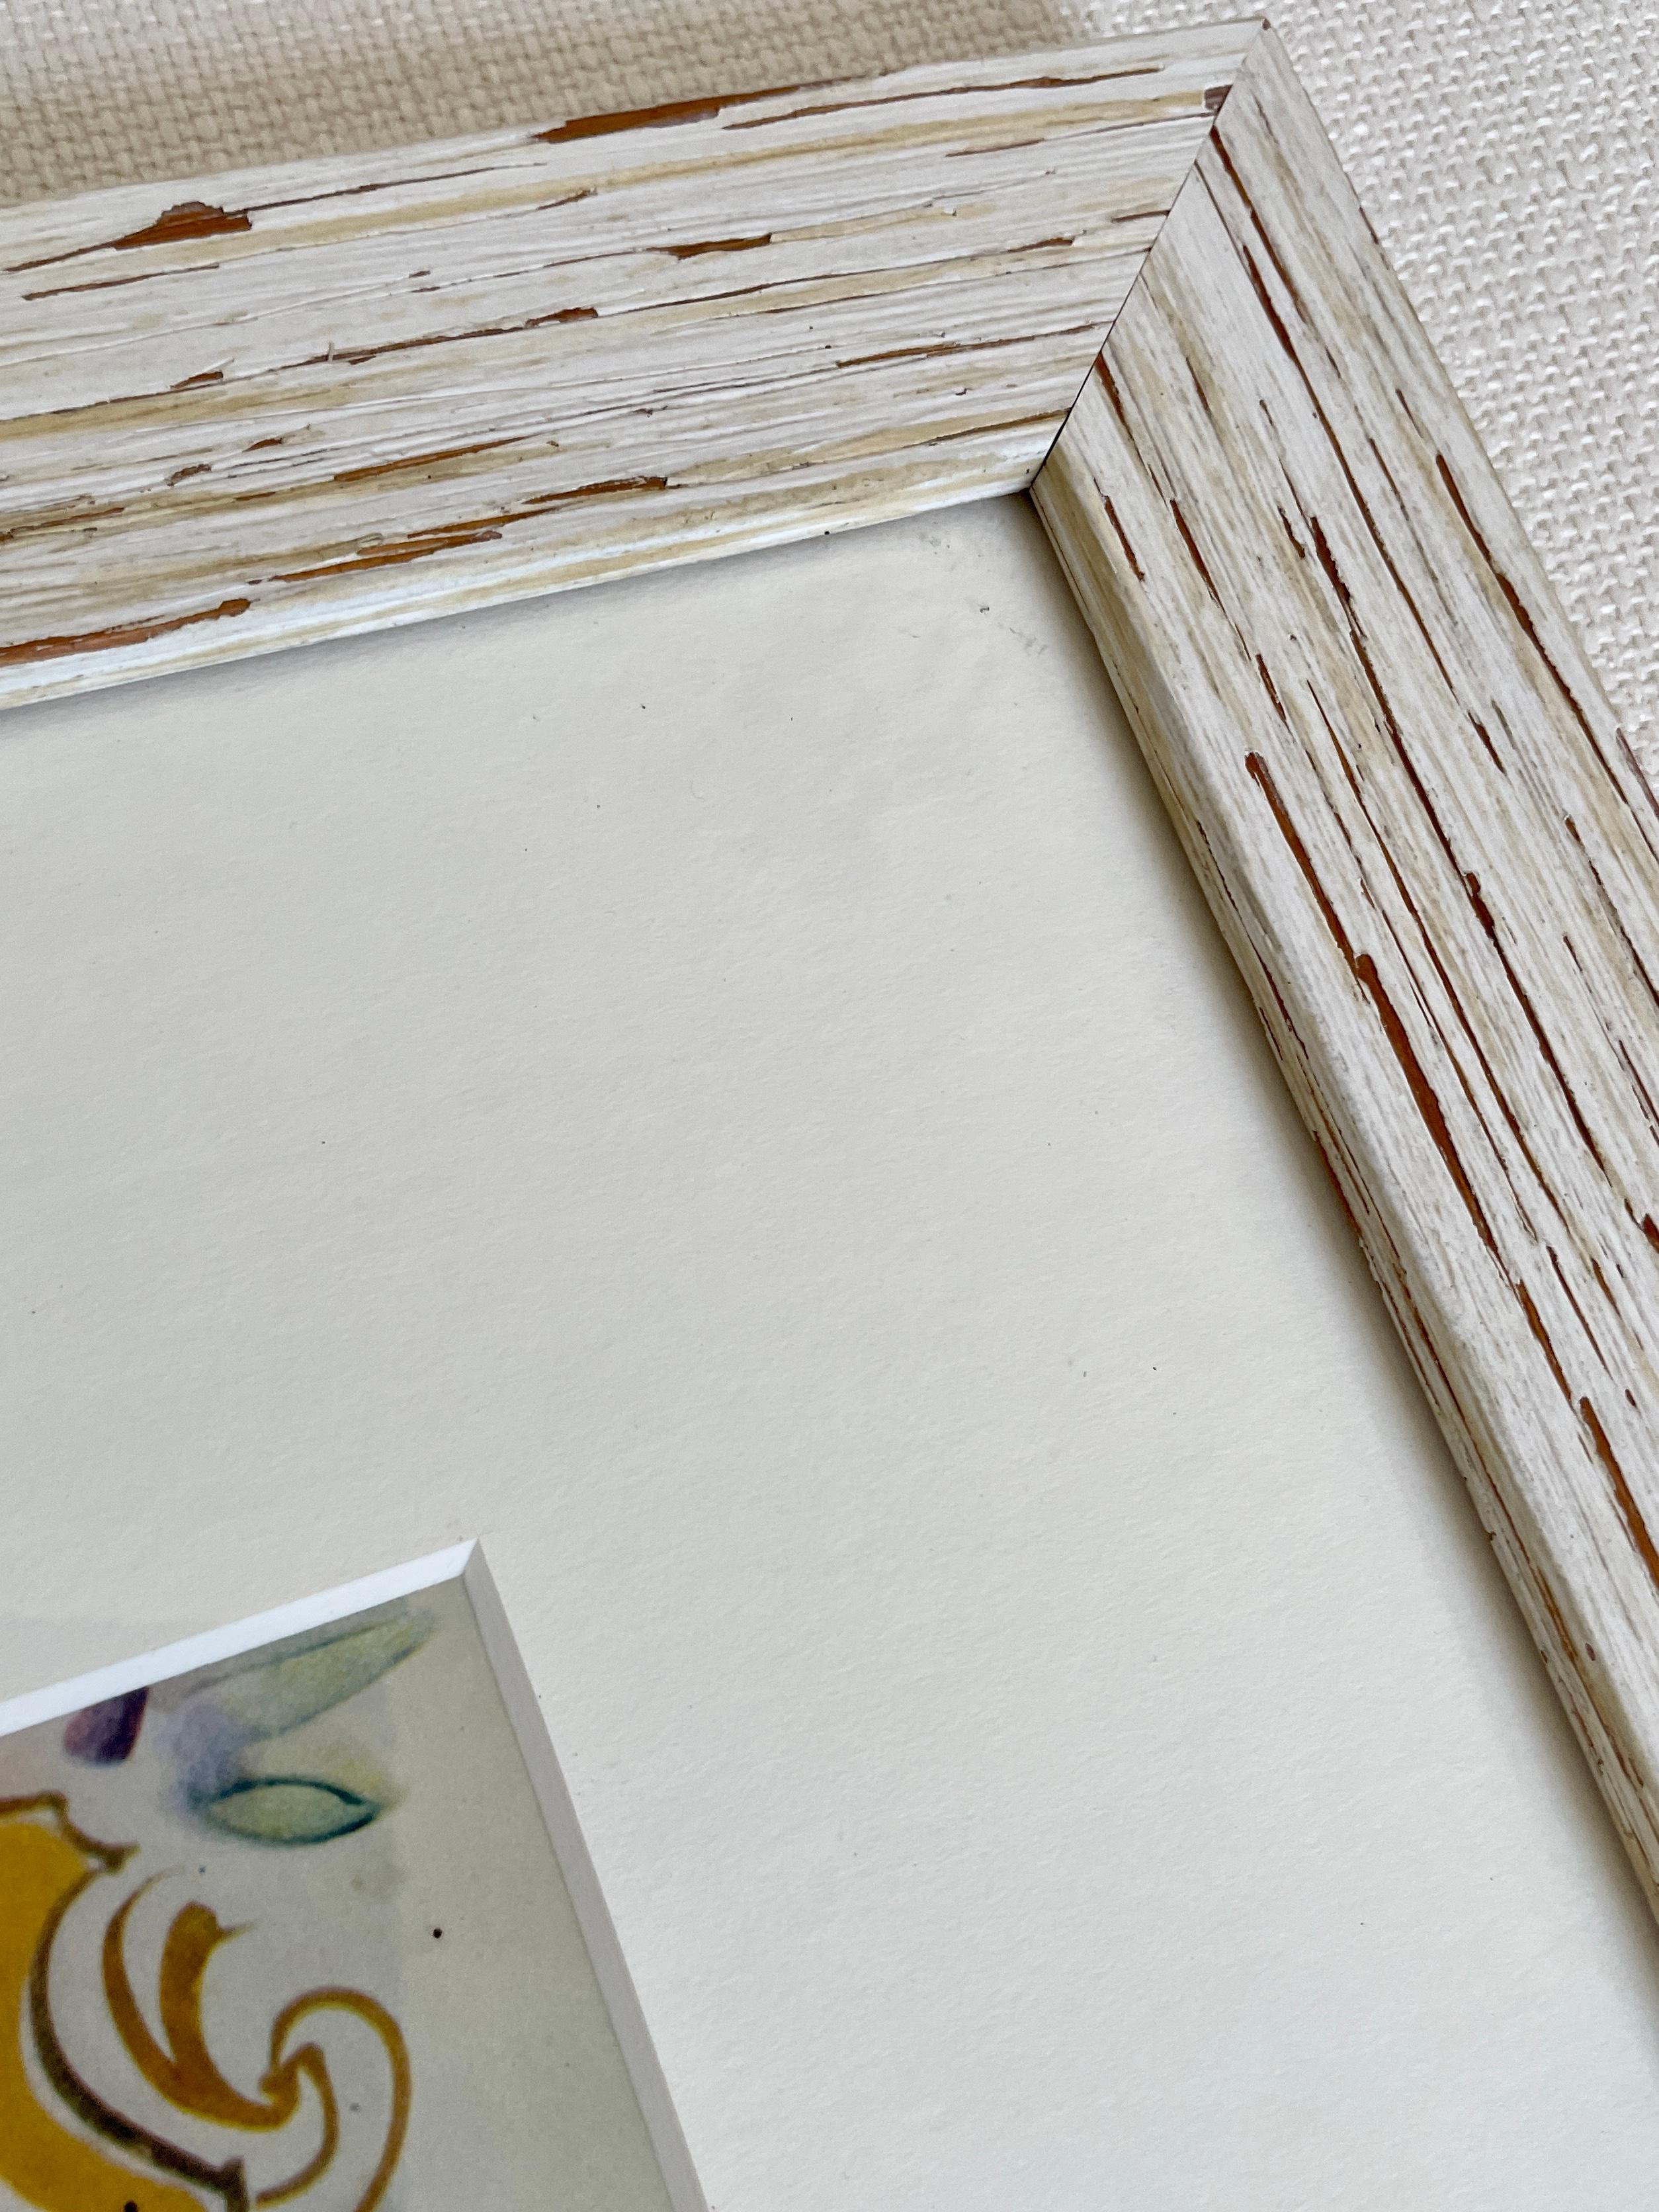 Lithographie Raoul Dufy signiert vom Künstler selbst - Interieur in Nizza. Der Süden Frankreichs in einem charmanten, intimen Interieur. Individuell gerahmt in cerused oak mit handgeschnittener 4-Schicht-Kunstmatte. Für die Frankophilen! 

Maße: